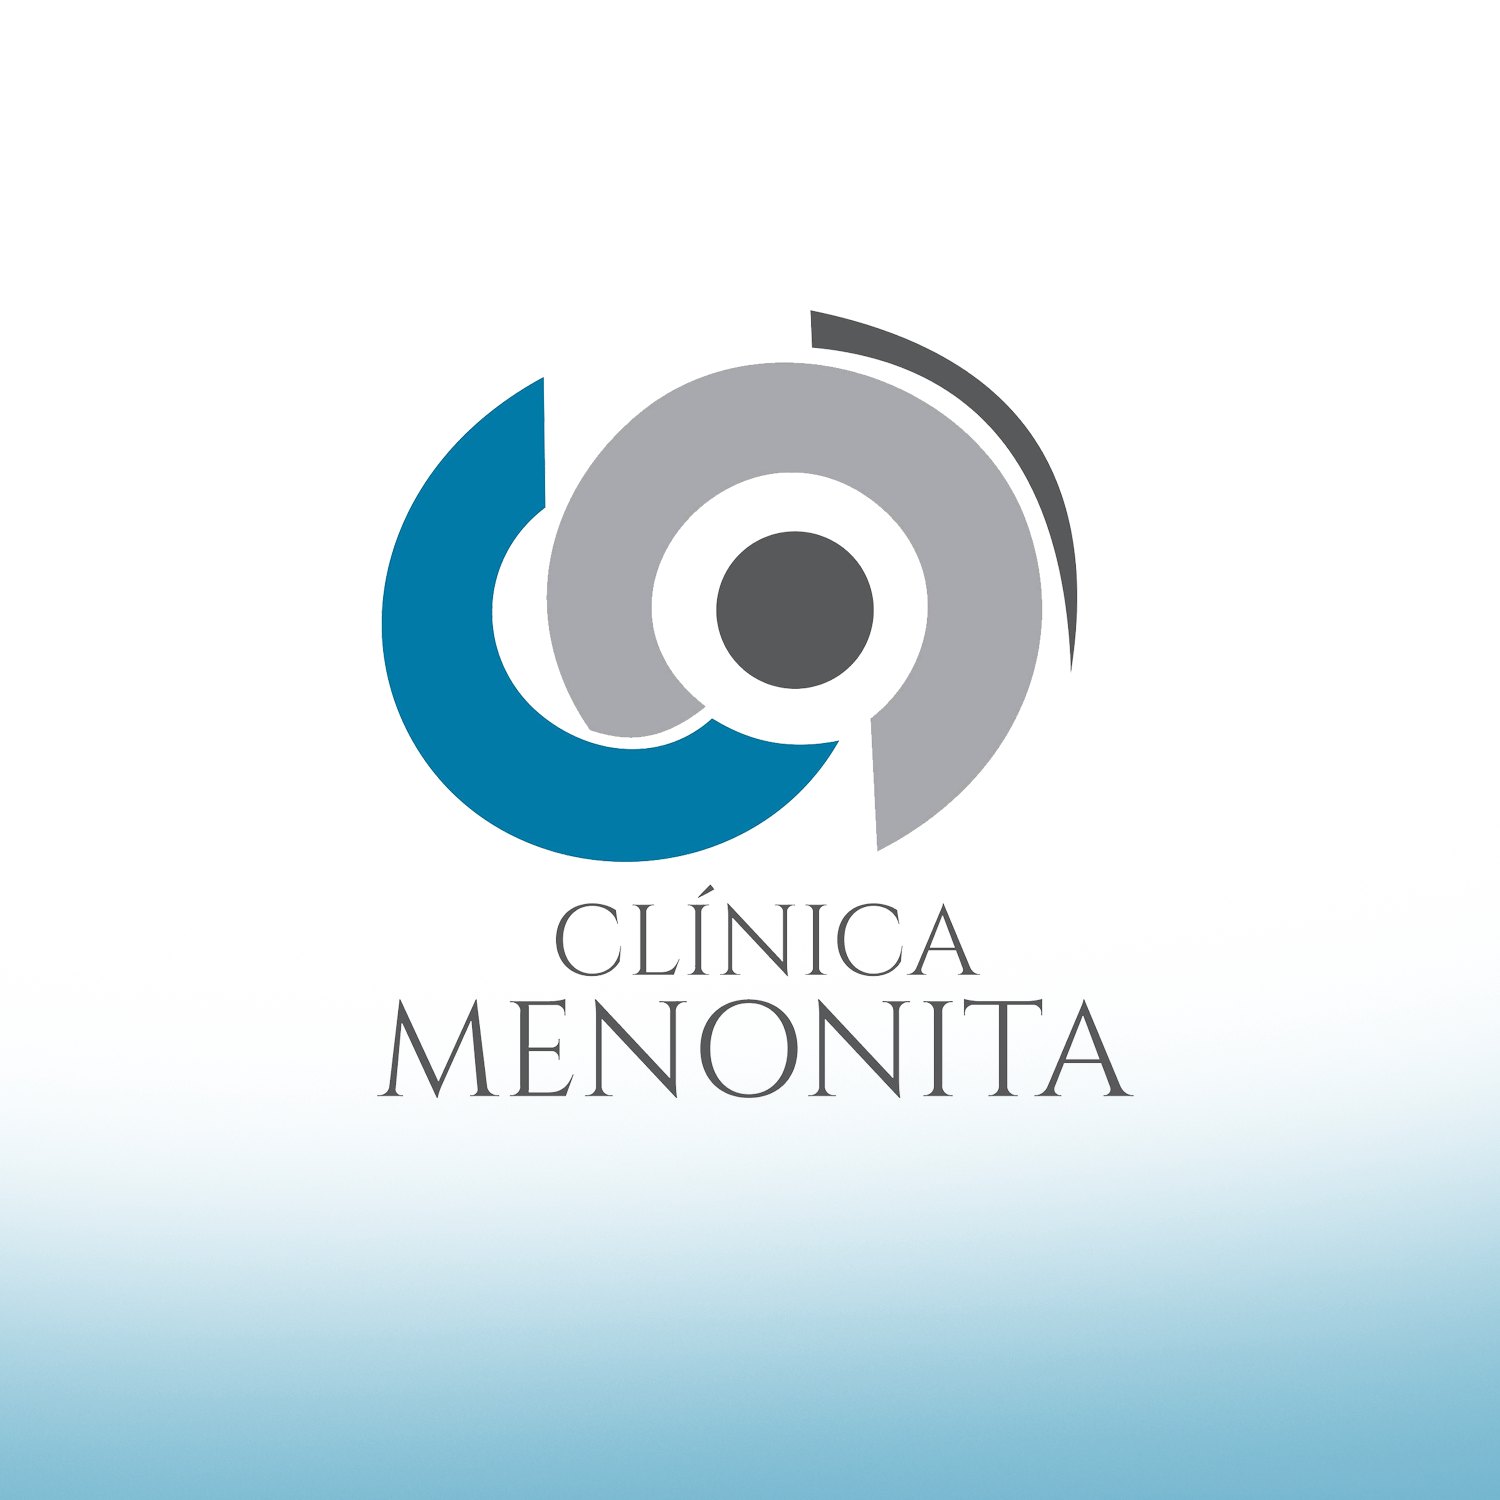 Clínica menonita